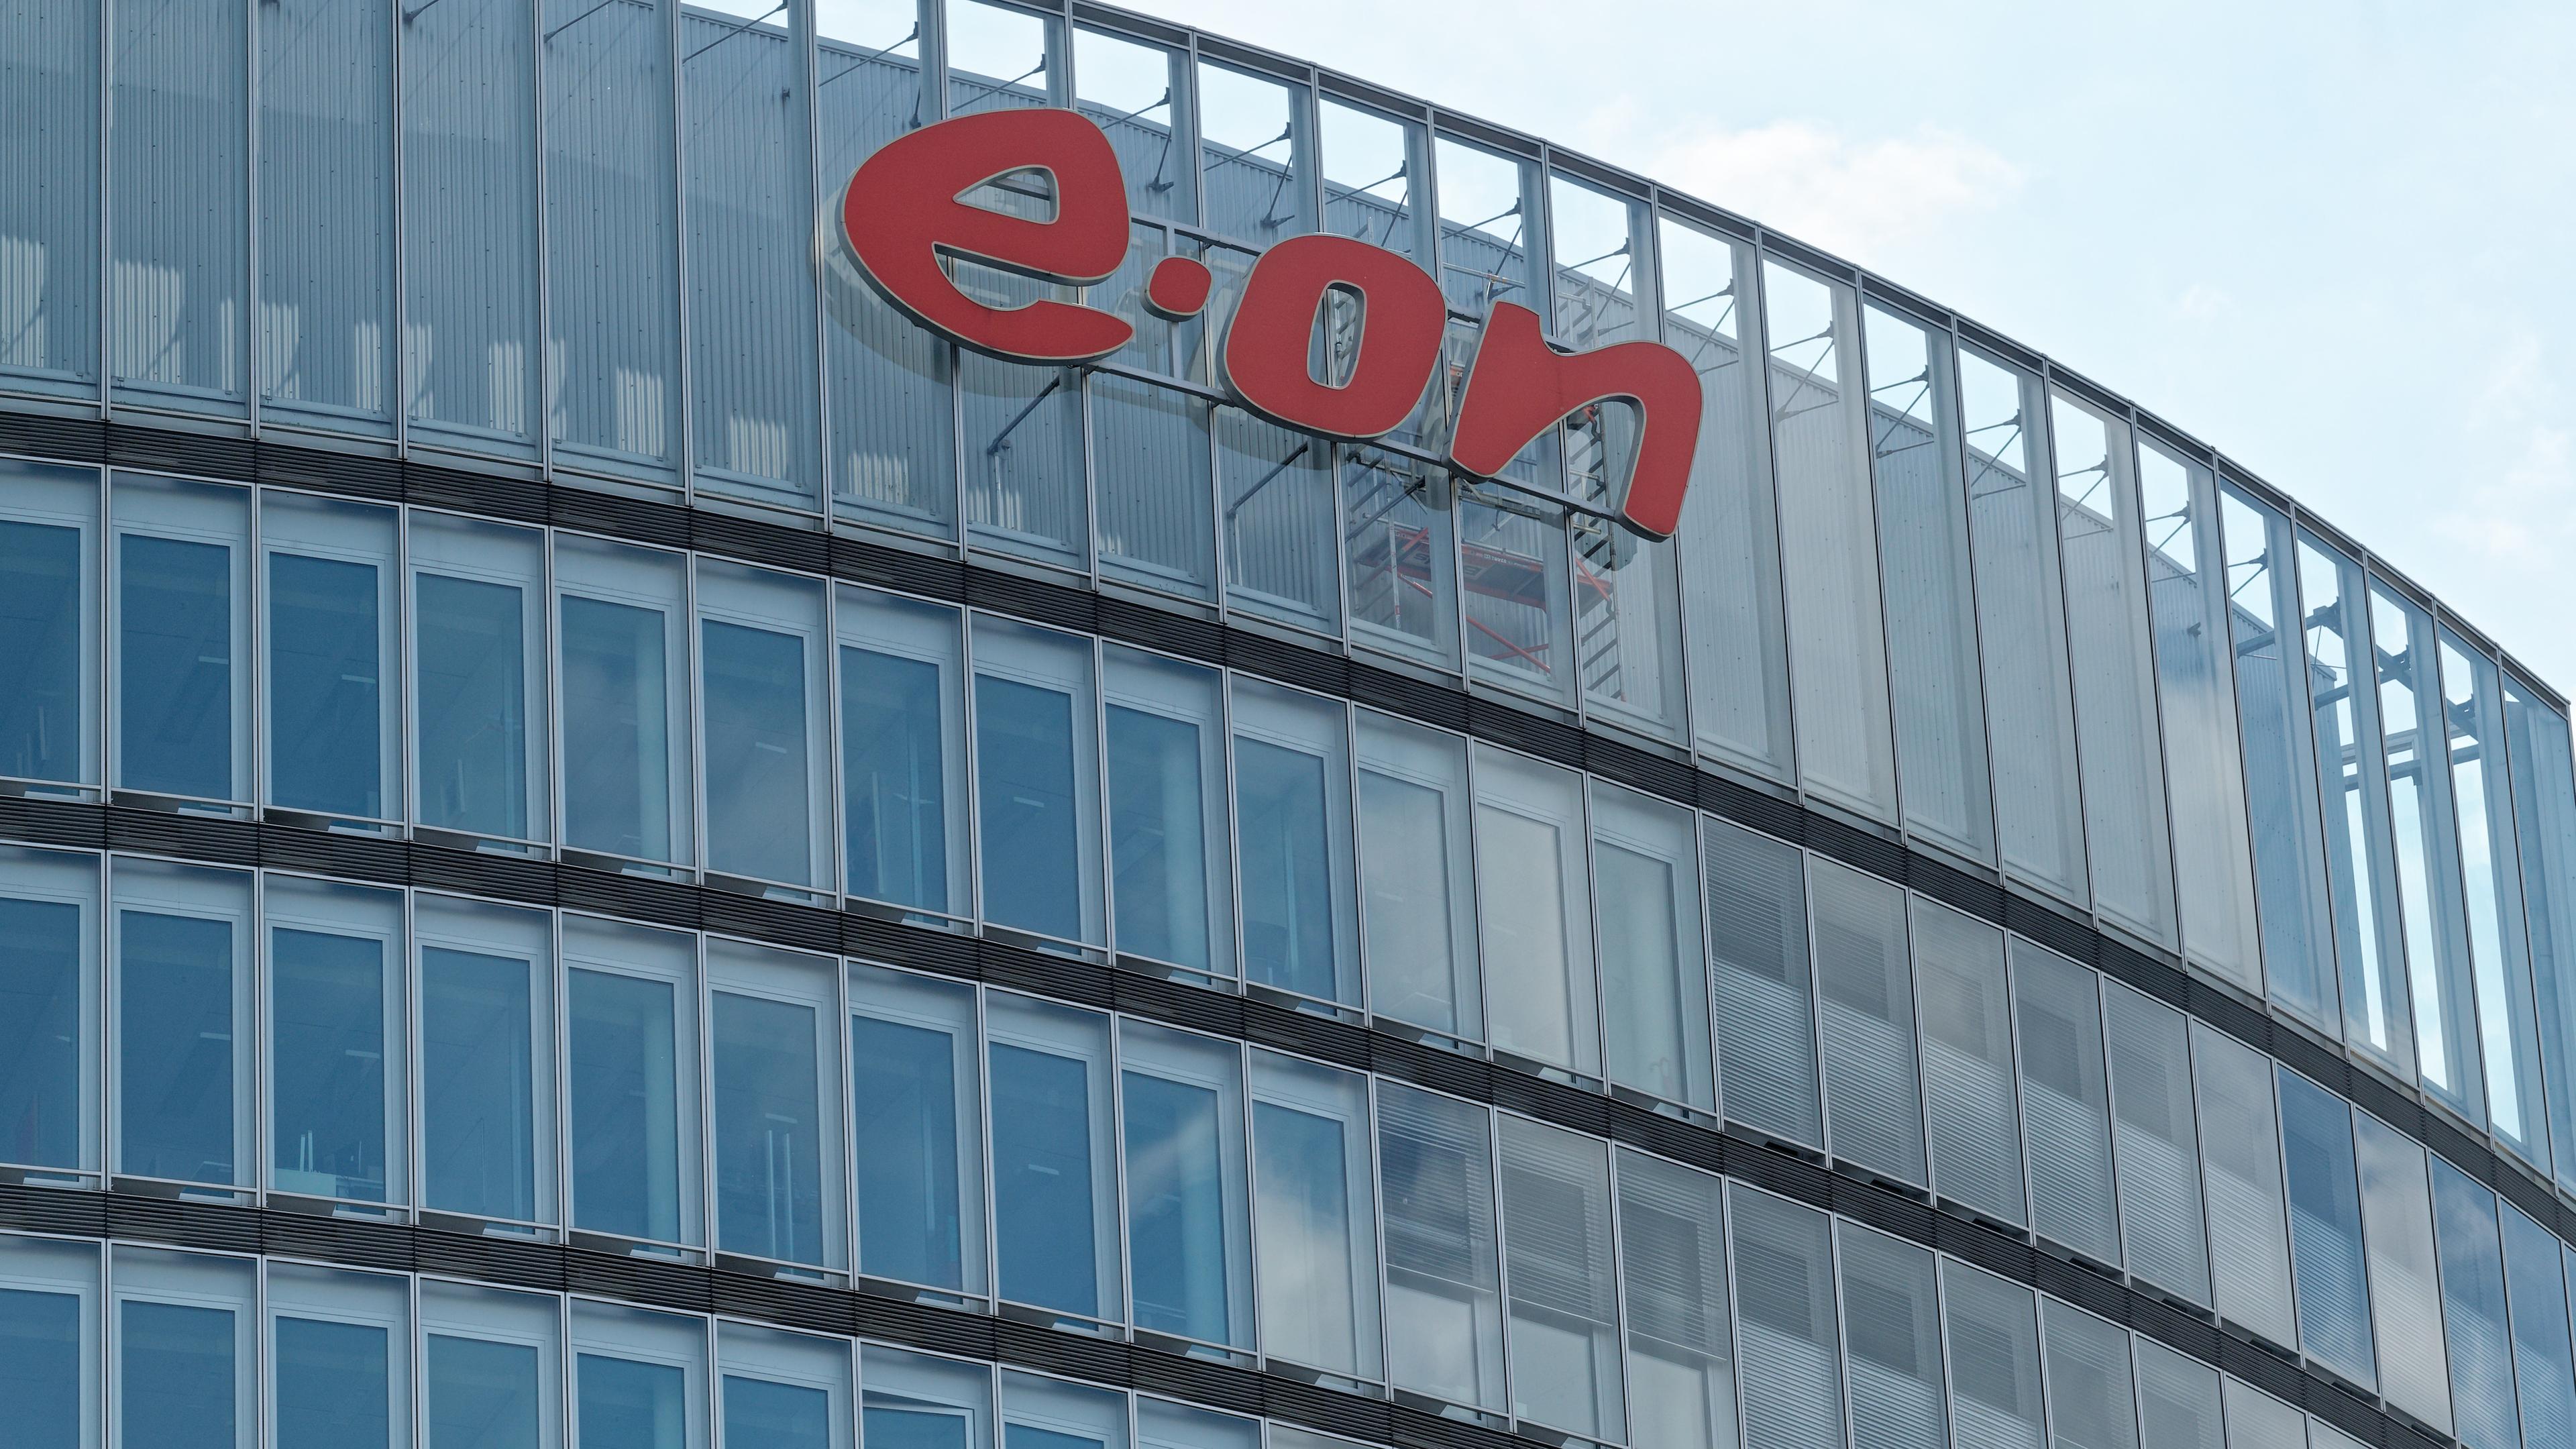 Das Firmenlogo ist an der Fassade des Hauptgebäudes des Energiekonzerns Eon zu sehen.